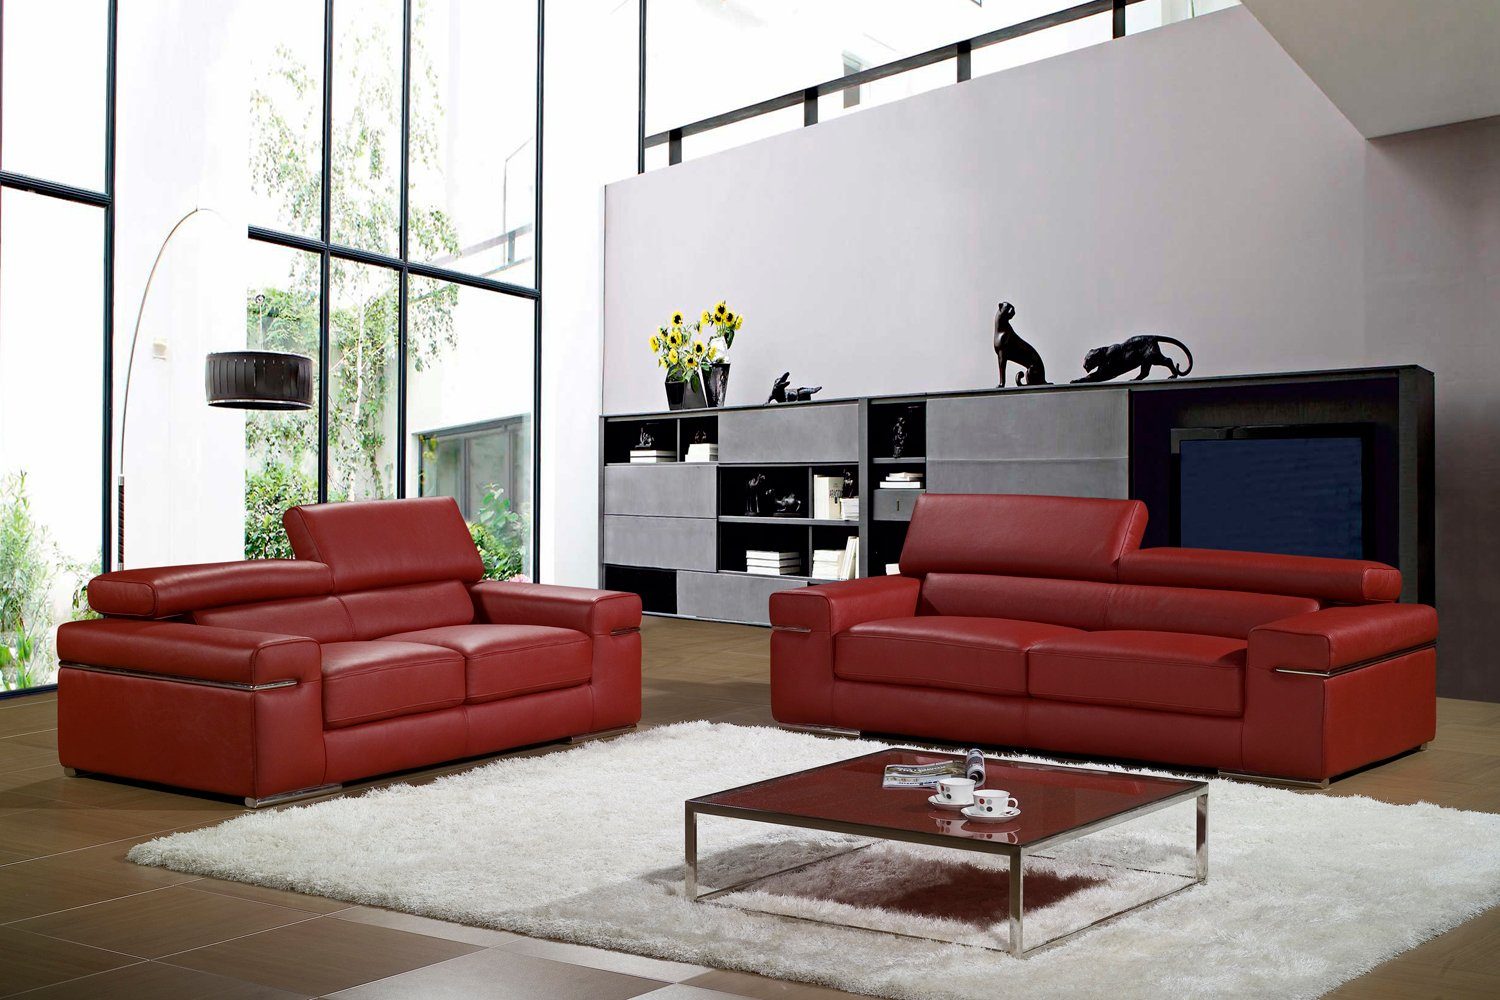 JVmoebel Sofa Weiße Couchgarnitur 3+2+1 luxus Design Sofas Möbel Polster Neu, Made in Europe | Alle Sofas